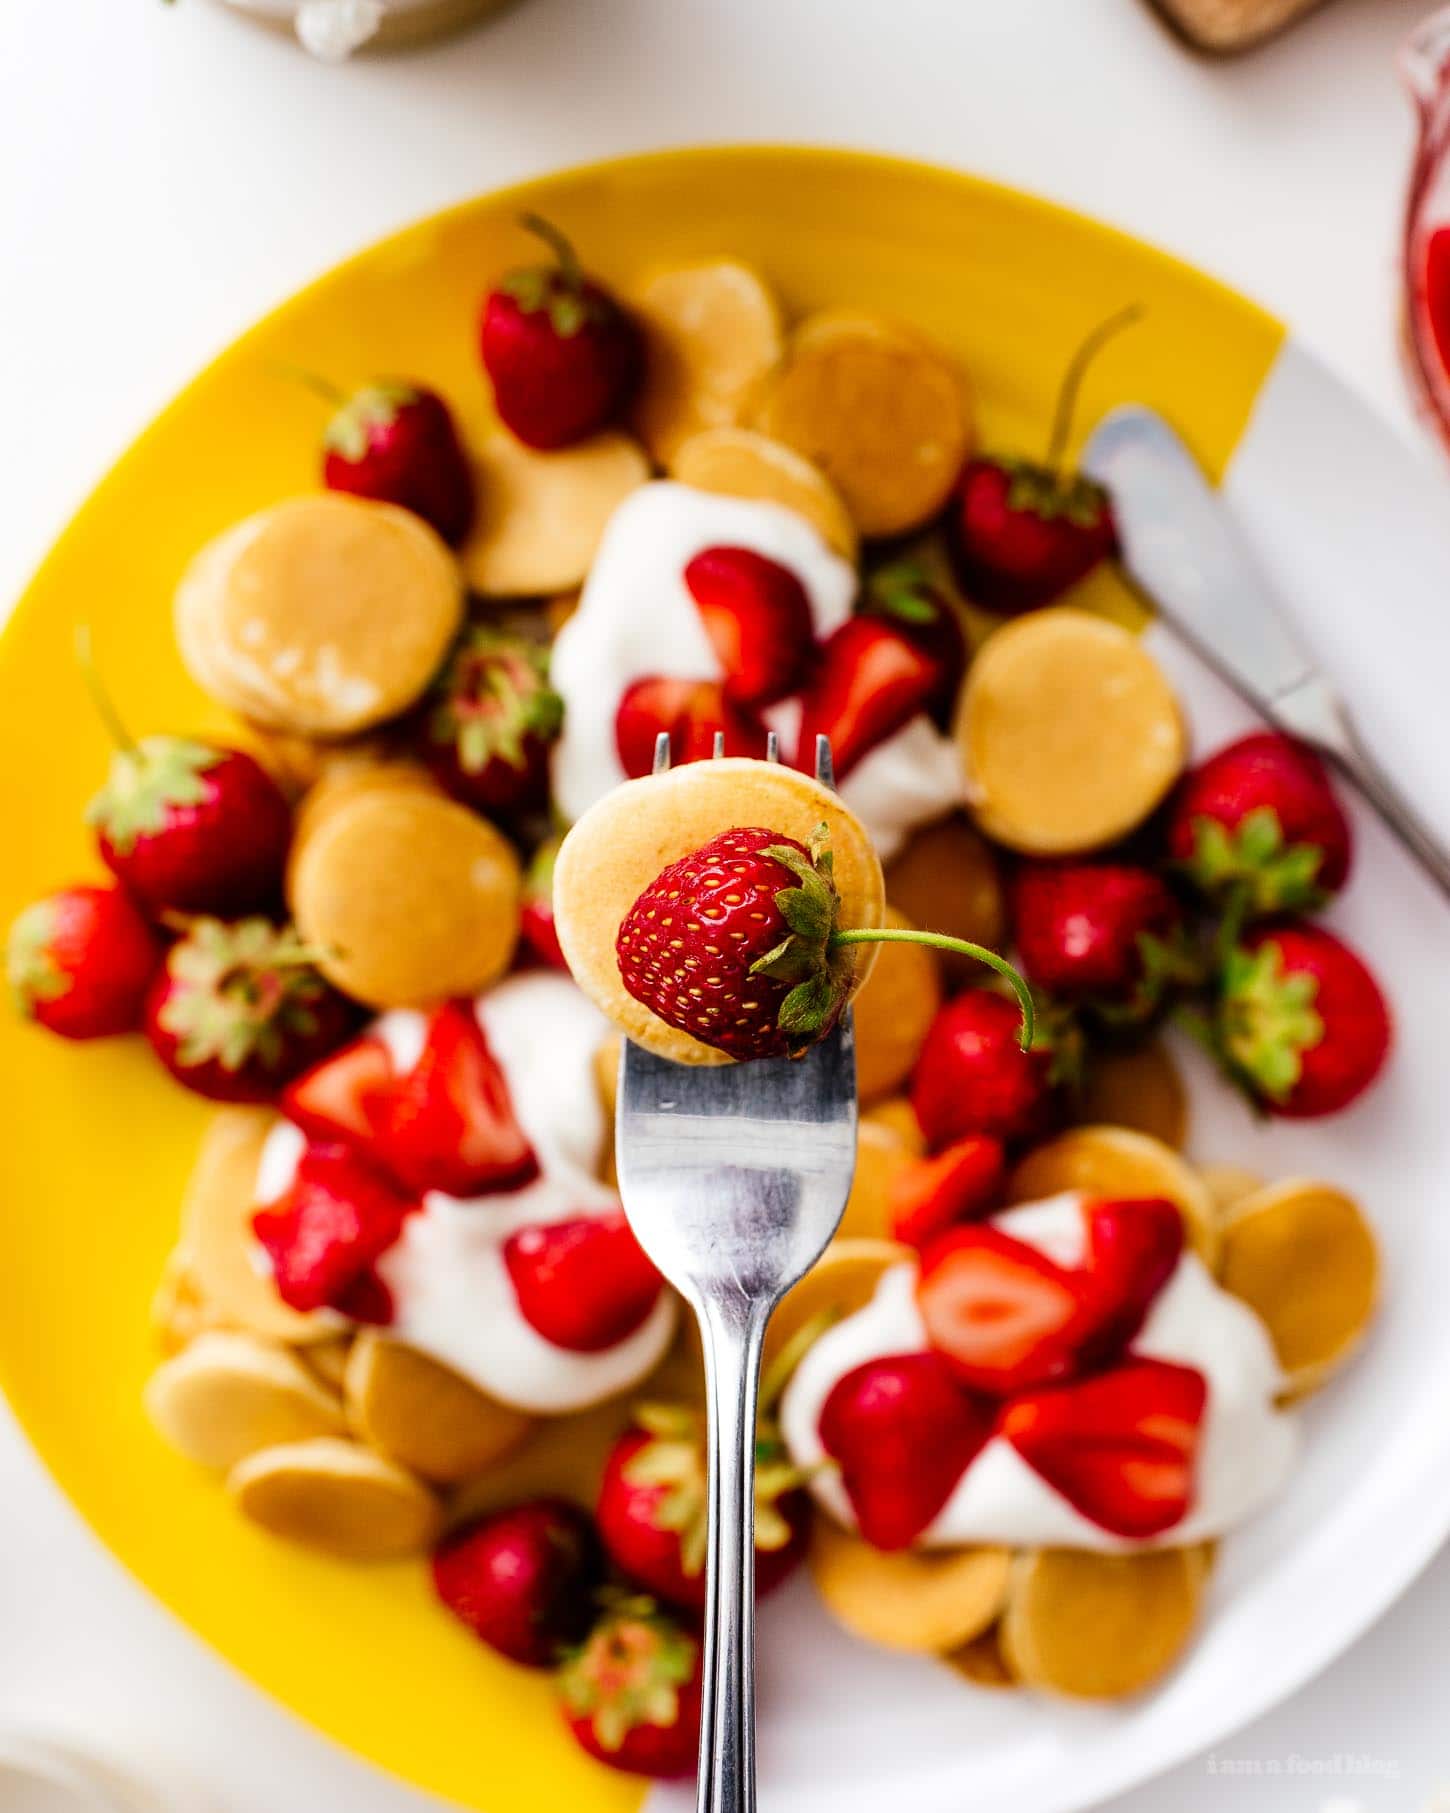 Cette recette de pancakes moelleux aux mini shortcakes aux fraises est parfaite pour l'été.  Mini pancakes à la vanille super mignons, garnis de fraises juteuses et de crème légèrement fouettée.  Comme un shortcake aux fraises au petit-déjeuner !  #fraises #fraise #strawberrypancakes #strawberrypancake #strawberryshortcake #strawberryshortcakes